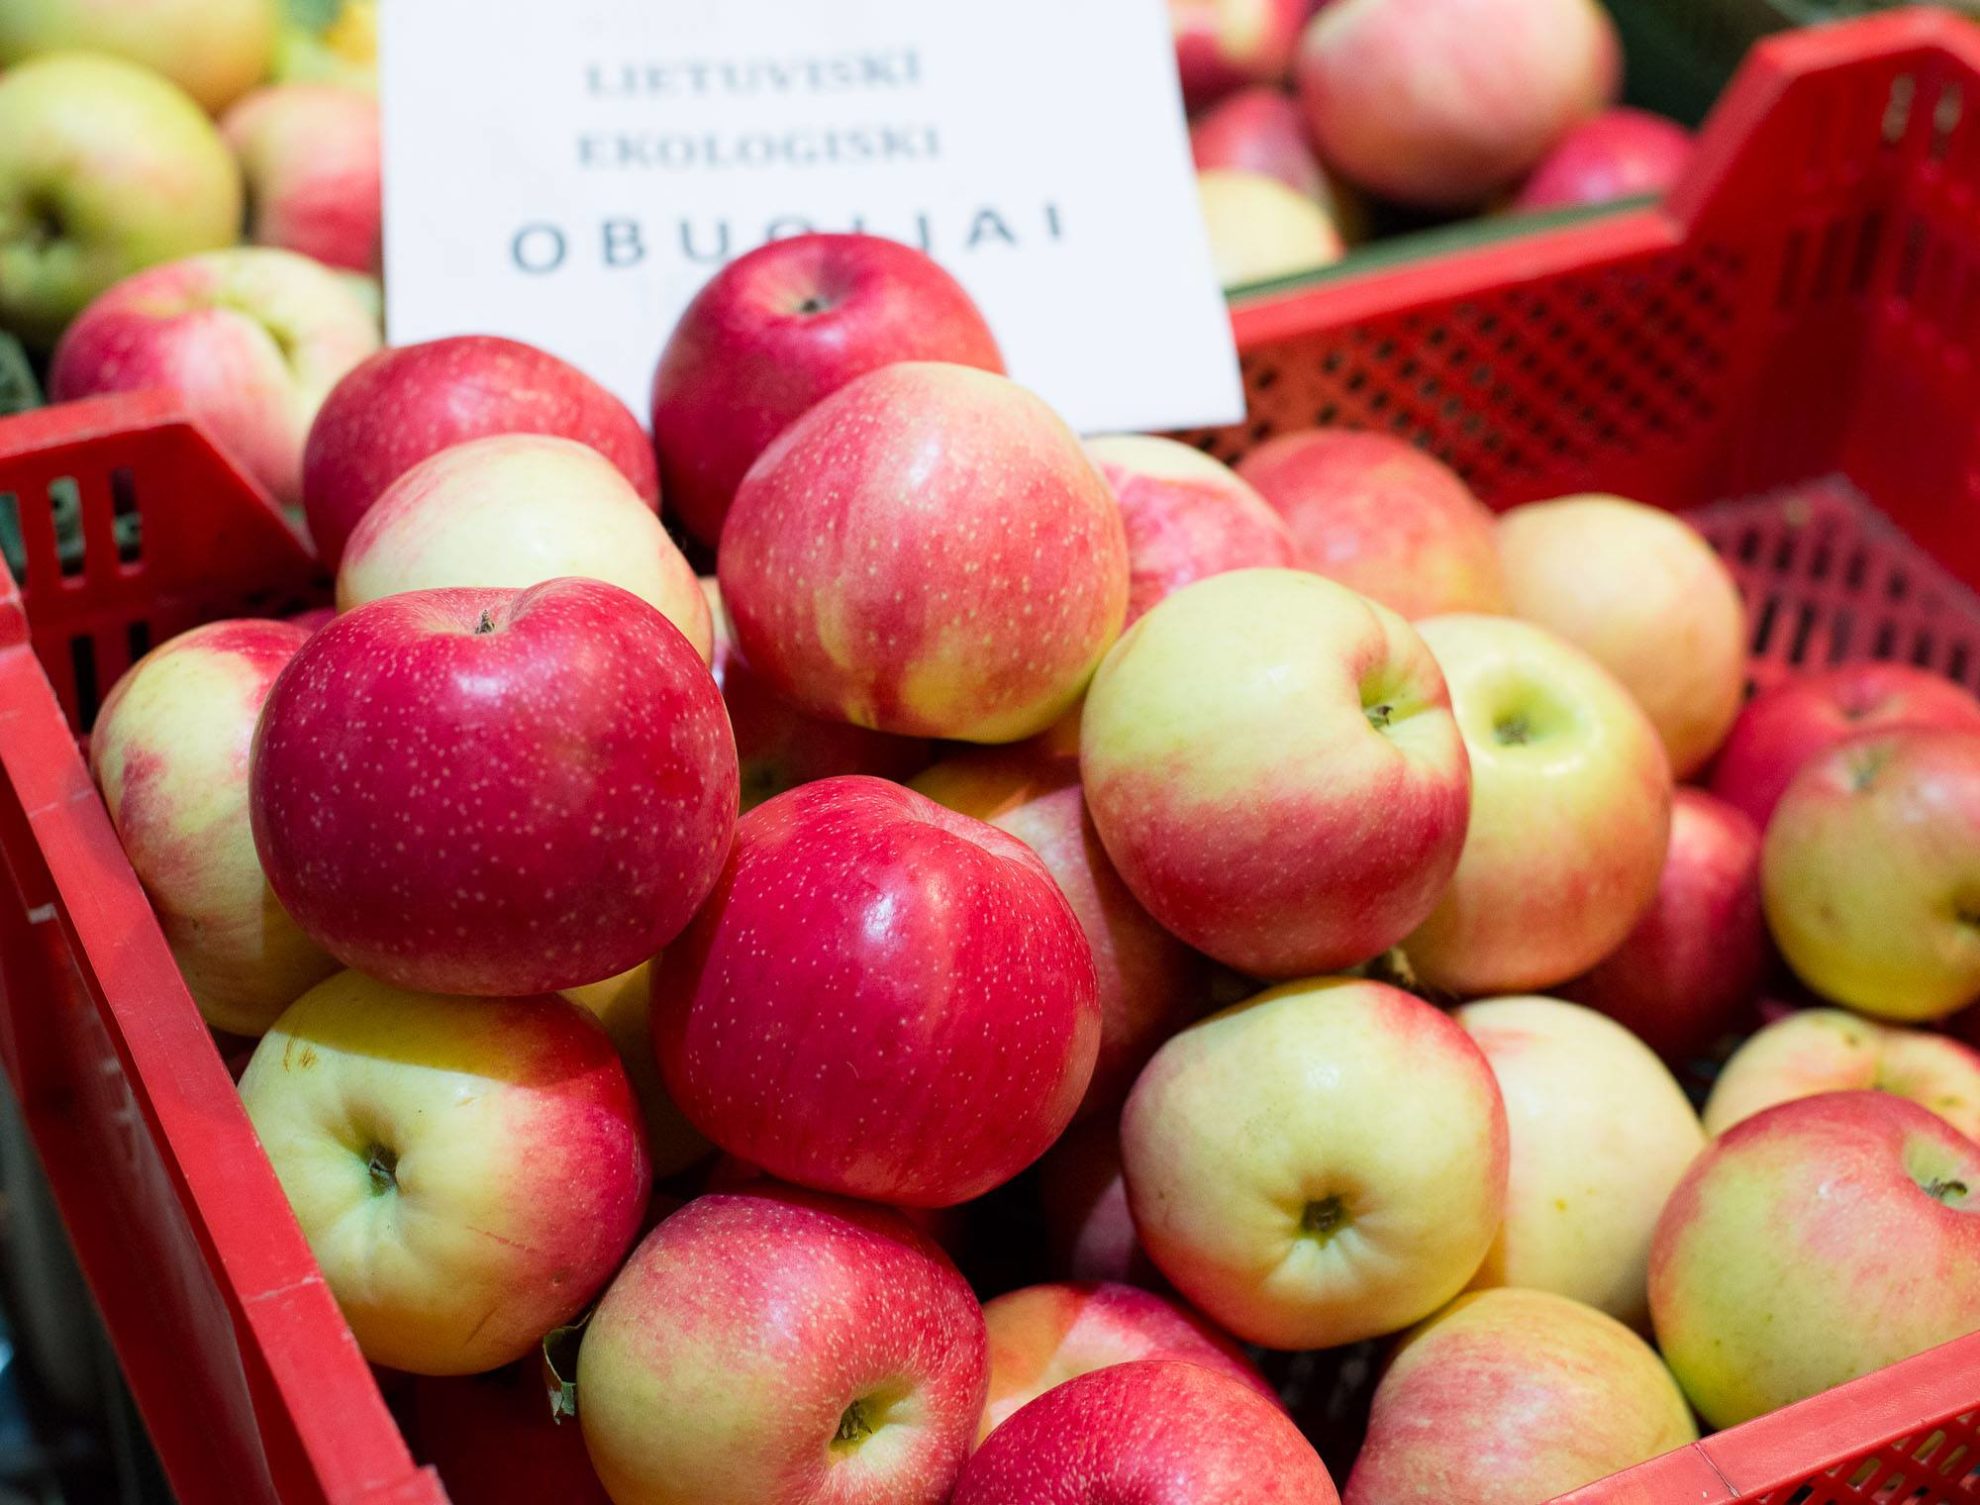 Tam tikrų rūšių obuolius žiemai galima saugoti rūsyje neapdorotus, bet galima bent dalį jų paversti obuolienėmis ar džiovinti. Kodėl? Nes taip įdomiau, skaniau ir tai gali būti puiki dovana.